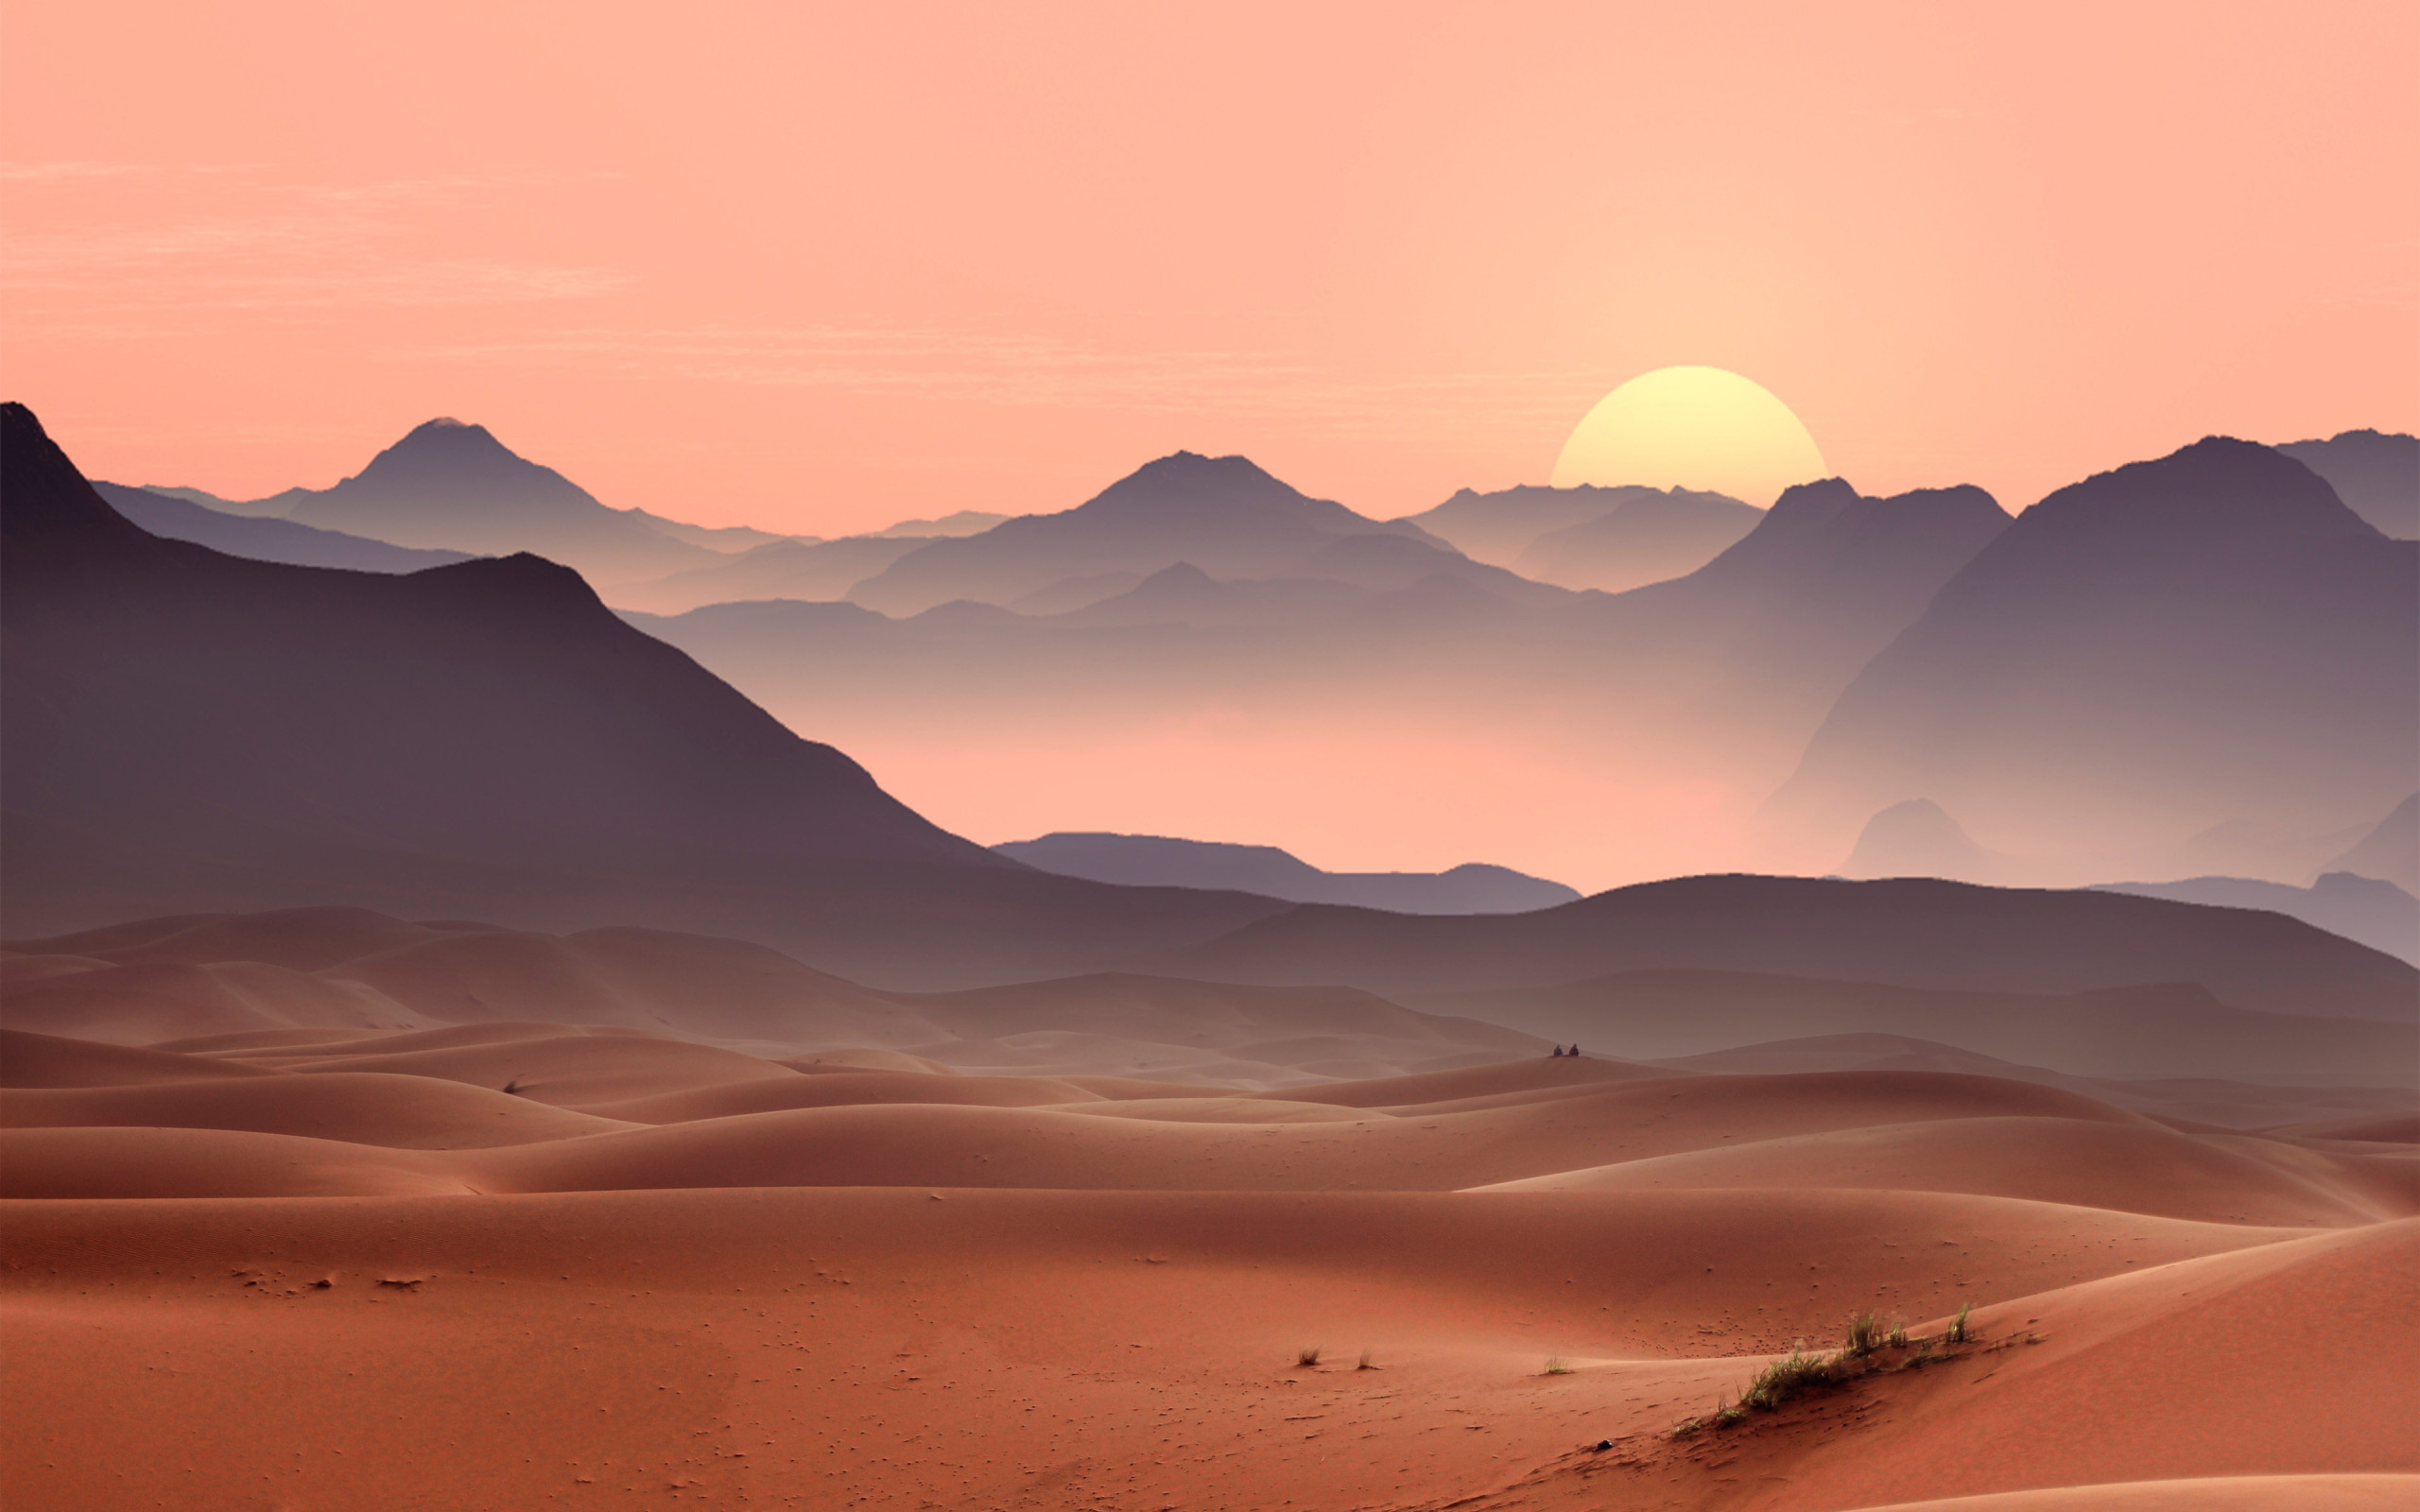 Sunset on the desert dunes wallpaper 2560x1600